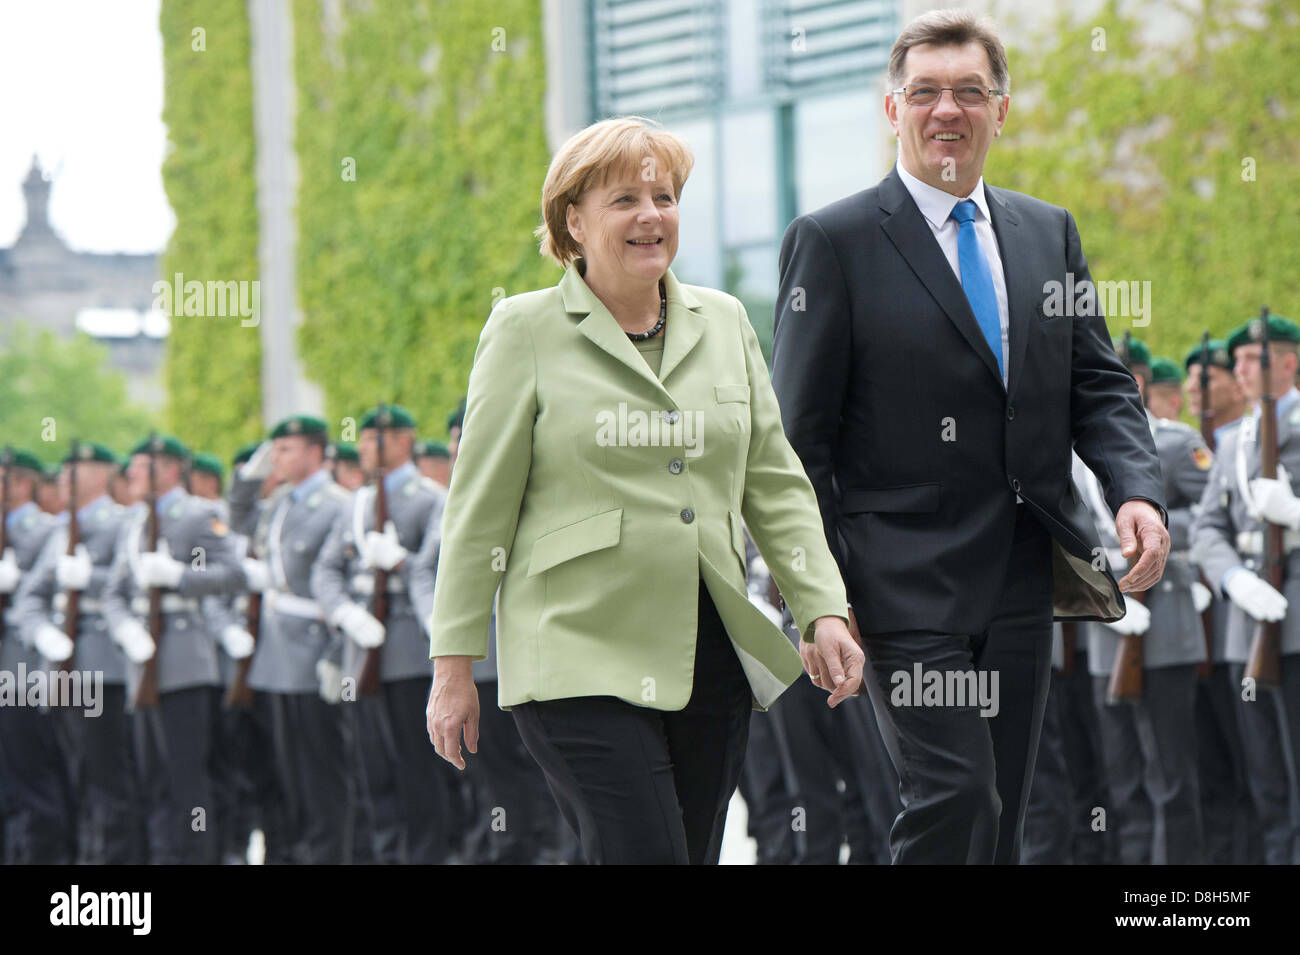 Il cancelliere tedesco Angela Merkel riceve il Premier lituano Algirdas Butkevicius presso la cancelleria di Berlino, Germania, 29 maggio 2013. Foto: MAURIZIO GAMBARINI Foto Stock